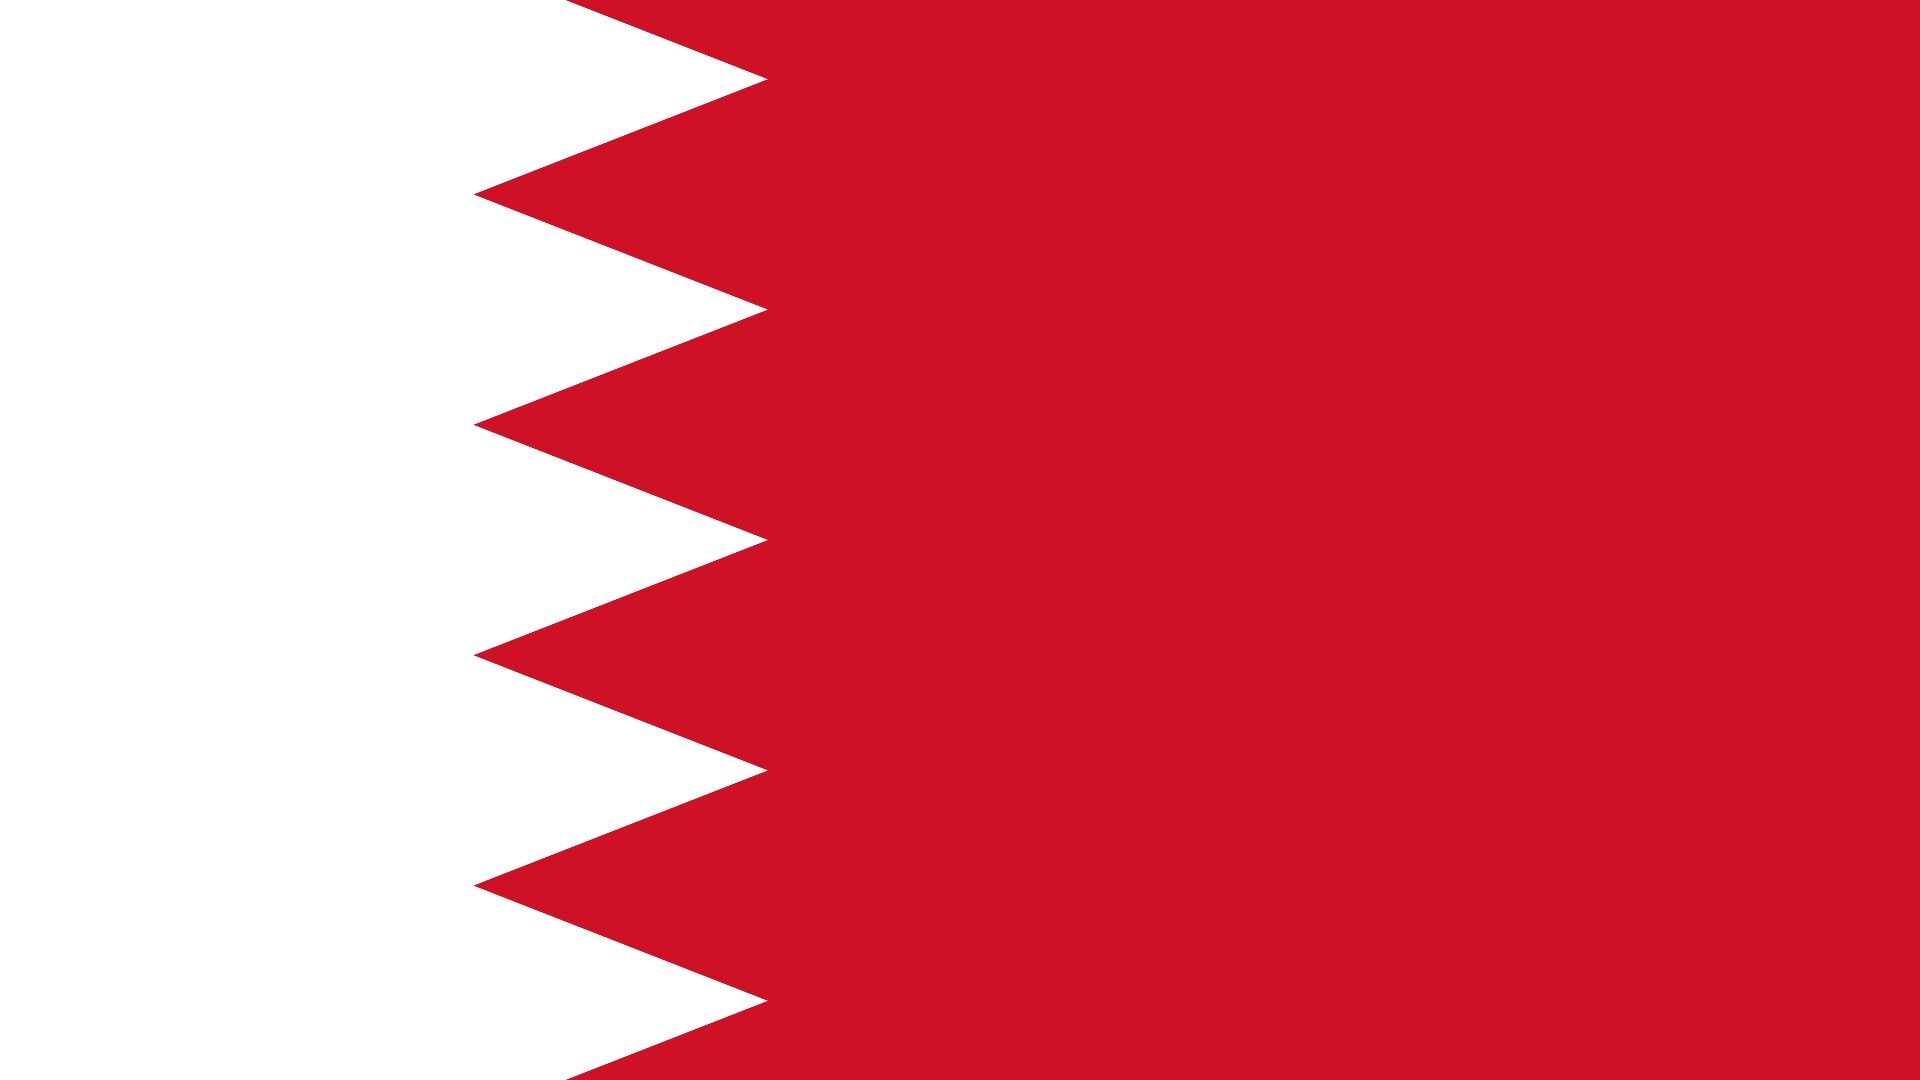 A bandeira do Bahrein é formada por um pano vermelho, com uma faixa vertical de cor branca ao lado. A borda desta faixa, que separa as cores, tem forma de serra dentada de cinco pontas.